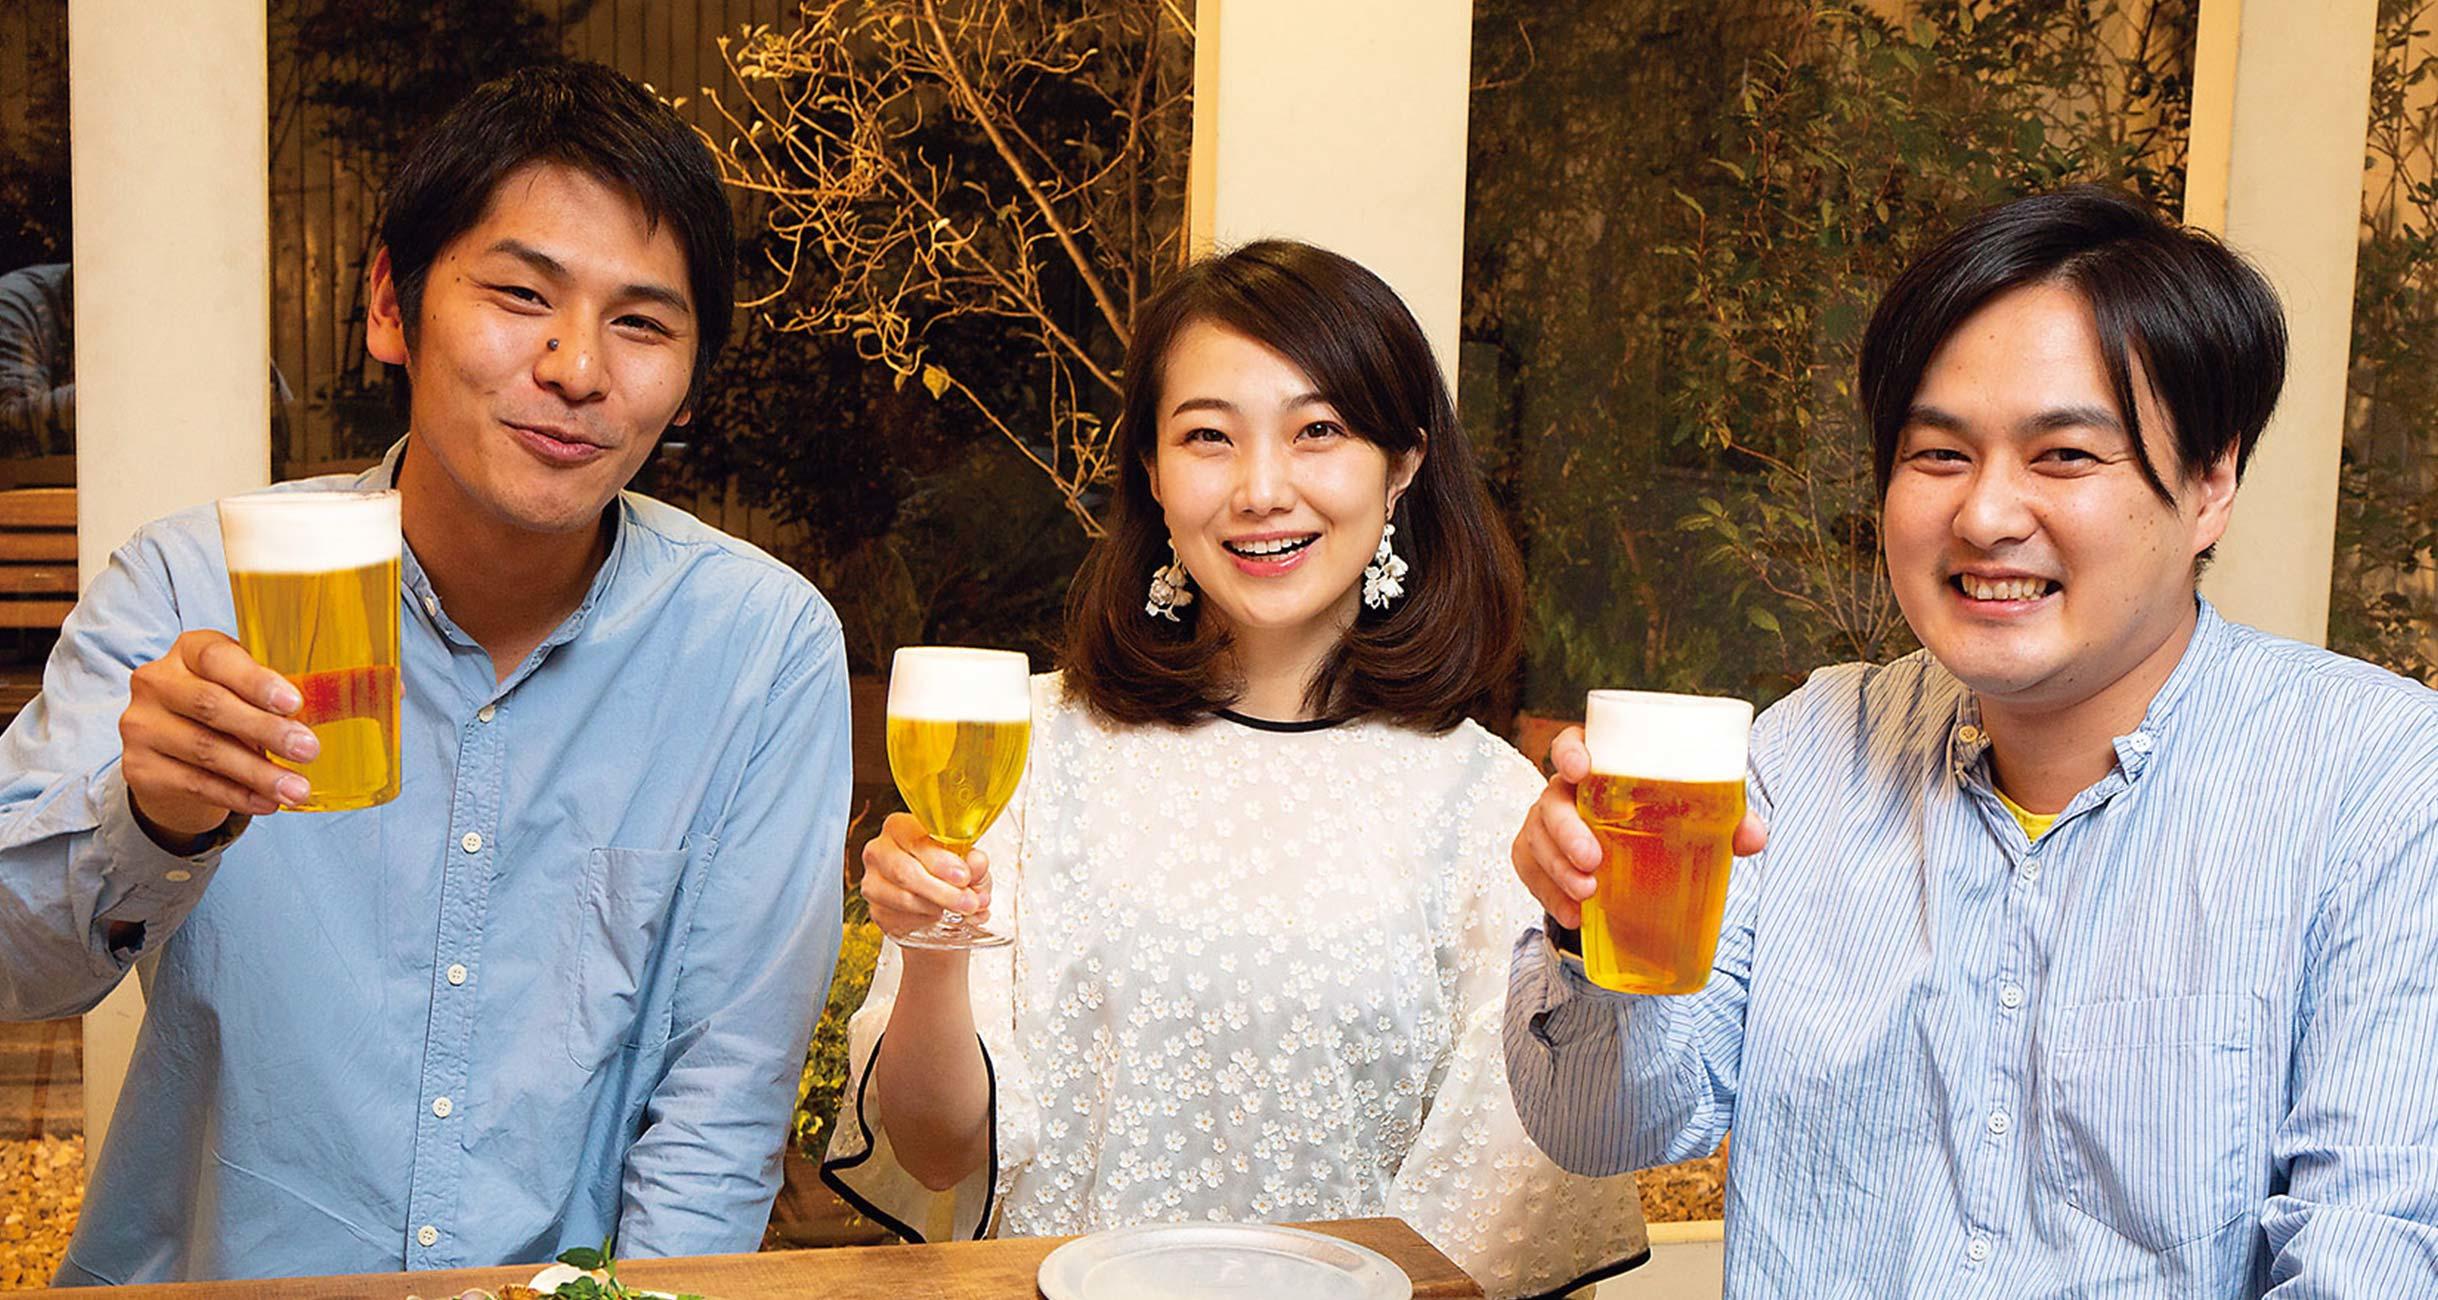 料理家の山田英季さん、ライターの崎谷実穂さん、クリエイティブプロデューサーの竹内順平さん。